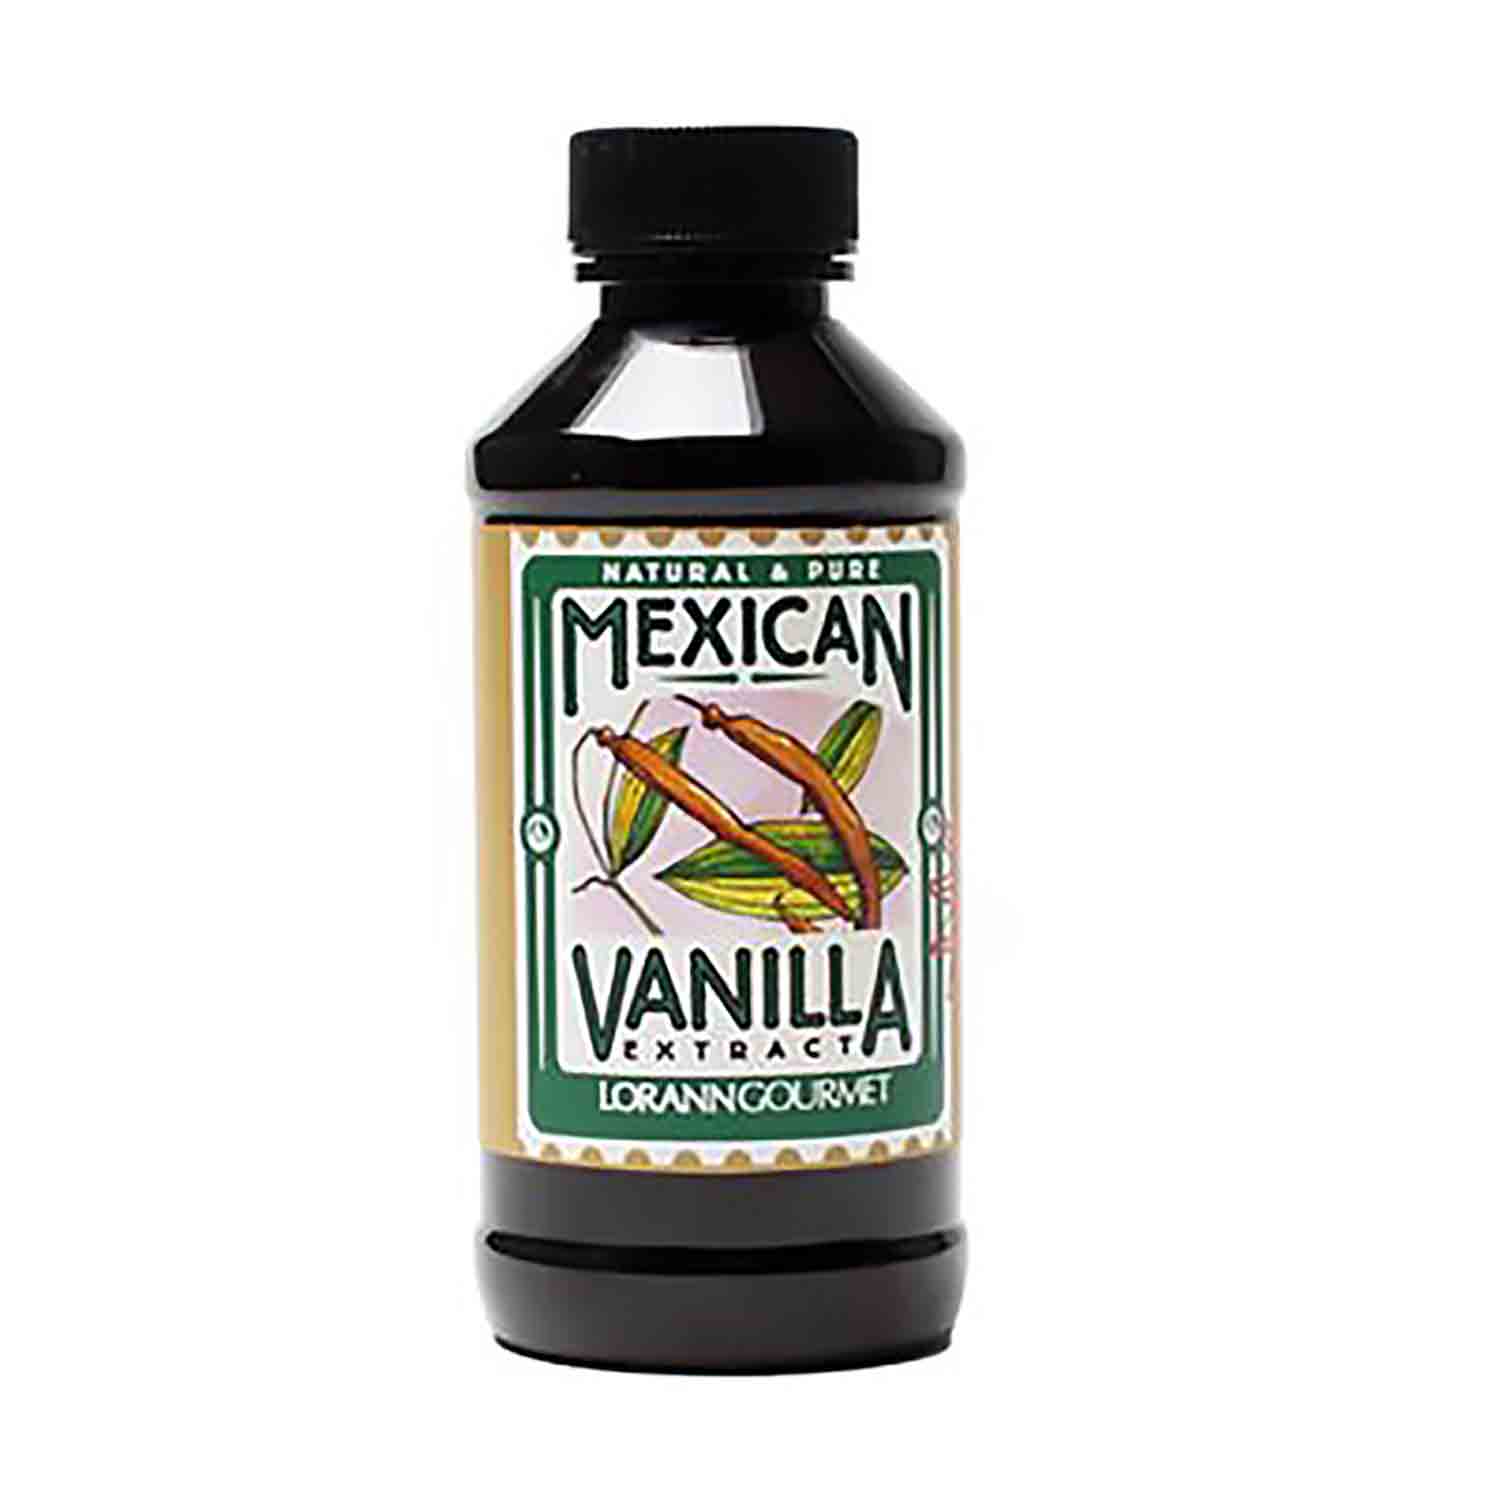 mexican vanilla extract near me